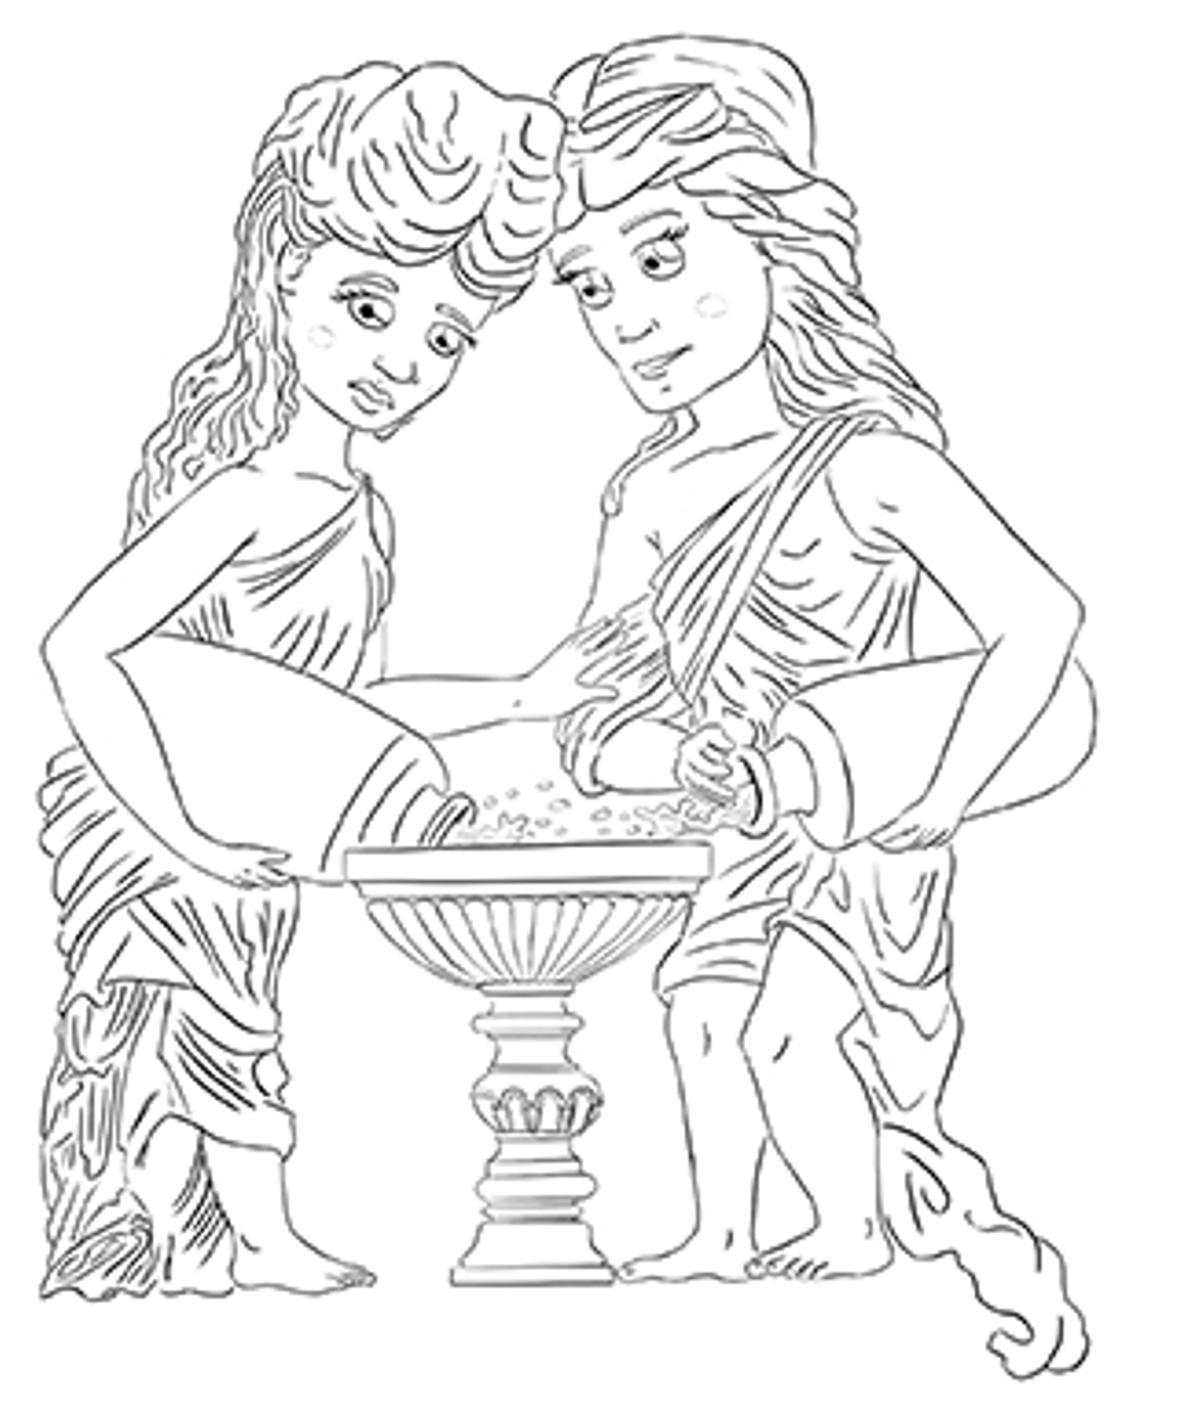 Las figuras femeninas del templete del Estanque del Retiro.